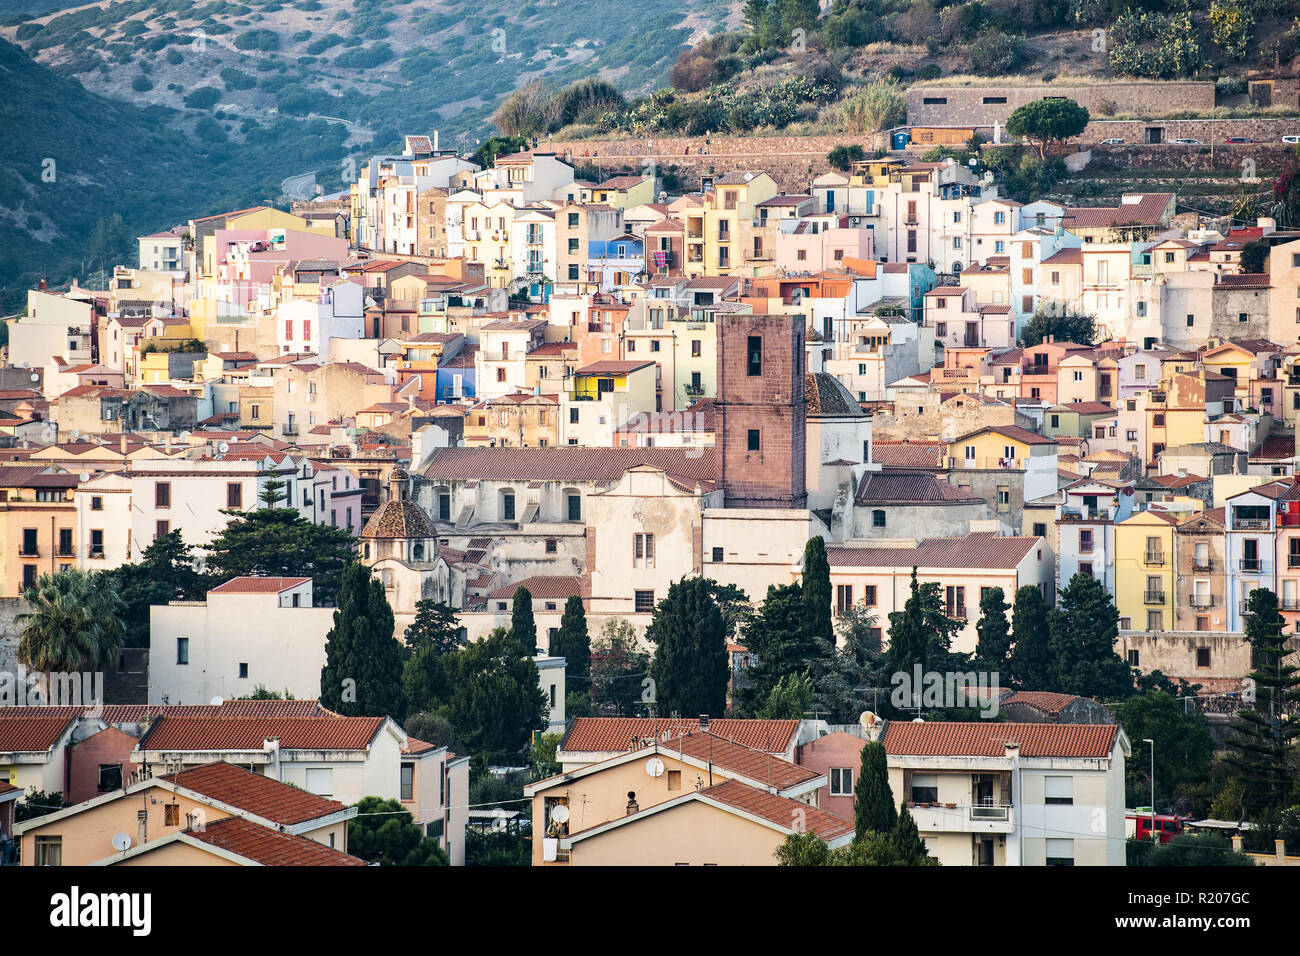 Il bellissimo borgo di Bosa con case colorate e un castello medievale sulla cima della collina. Bosa è situata nel nord-ovest della Sardegna, Italia. Foto Stock